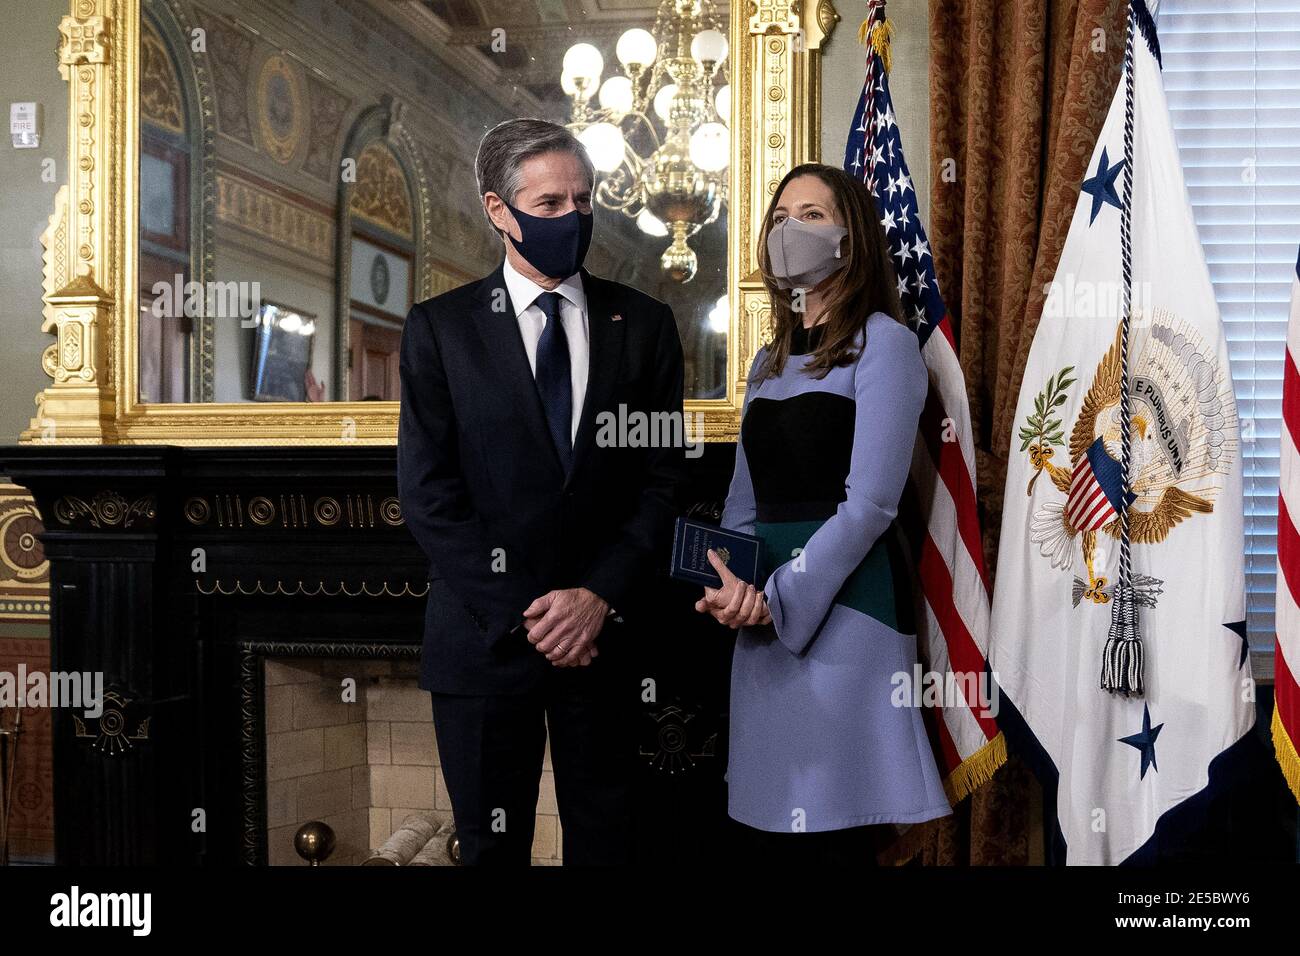 Antony Blinken, secrétaire d'État des États-Unis, est parti, et sa femme Evan Ryan se tiennent debout lors d'une cérémonie d'assermentation à la Maison Blanche à Washington, D.C., aux États-Unis, le mercredi 27 janvier 2021. Le Sénat a confirmé hier Blinken, donnant à l'un des collaborateurs les plus longtemps en service du président Biden la tâche de reprendre les négociations nucléaires avec l'Iran et de rétablir la confiance avec les alliés secoués par quatre années de l'administration Trump. Photo de Stefani Reynolds/Pool/ABACAPRESS.COM Banque D'Images